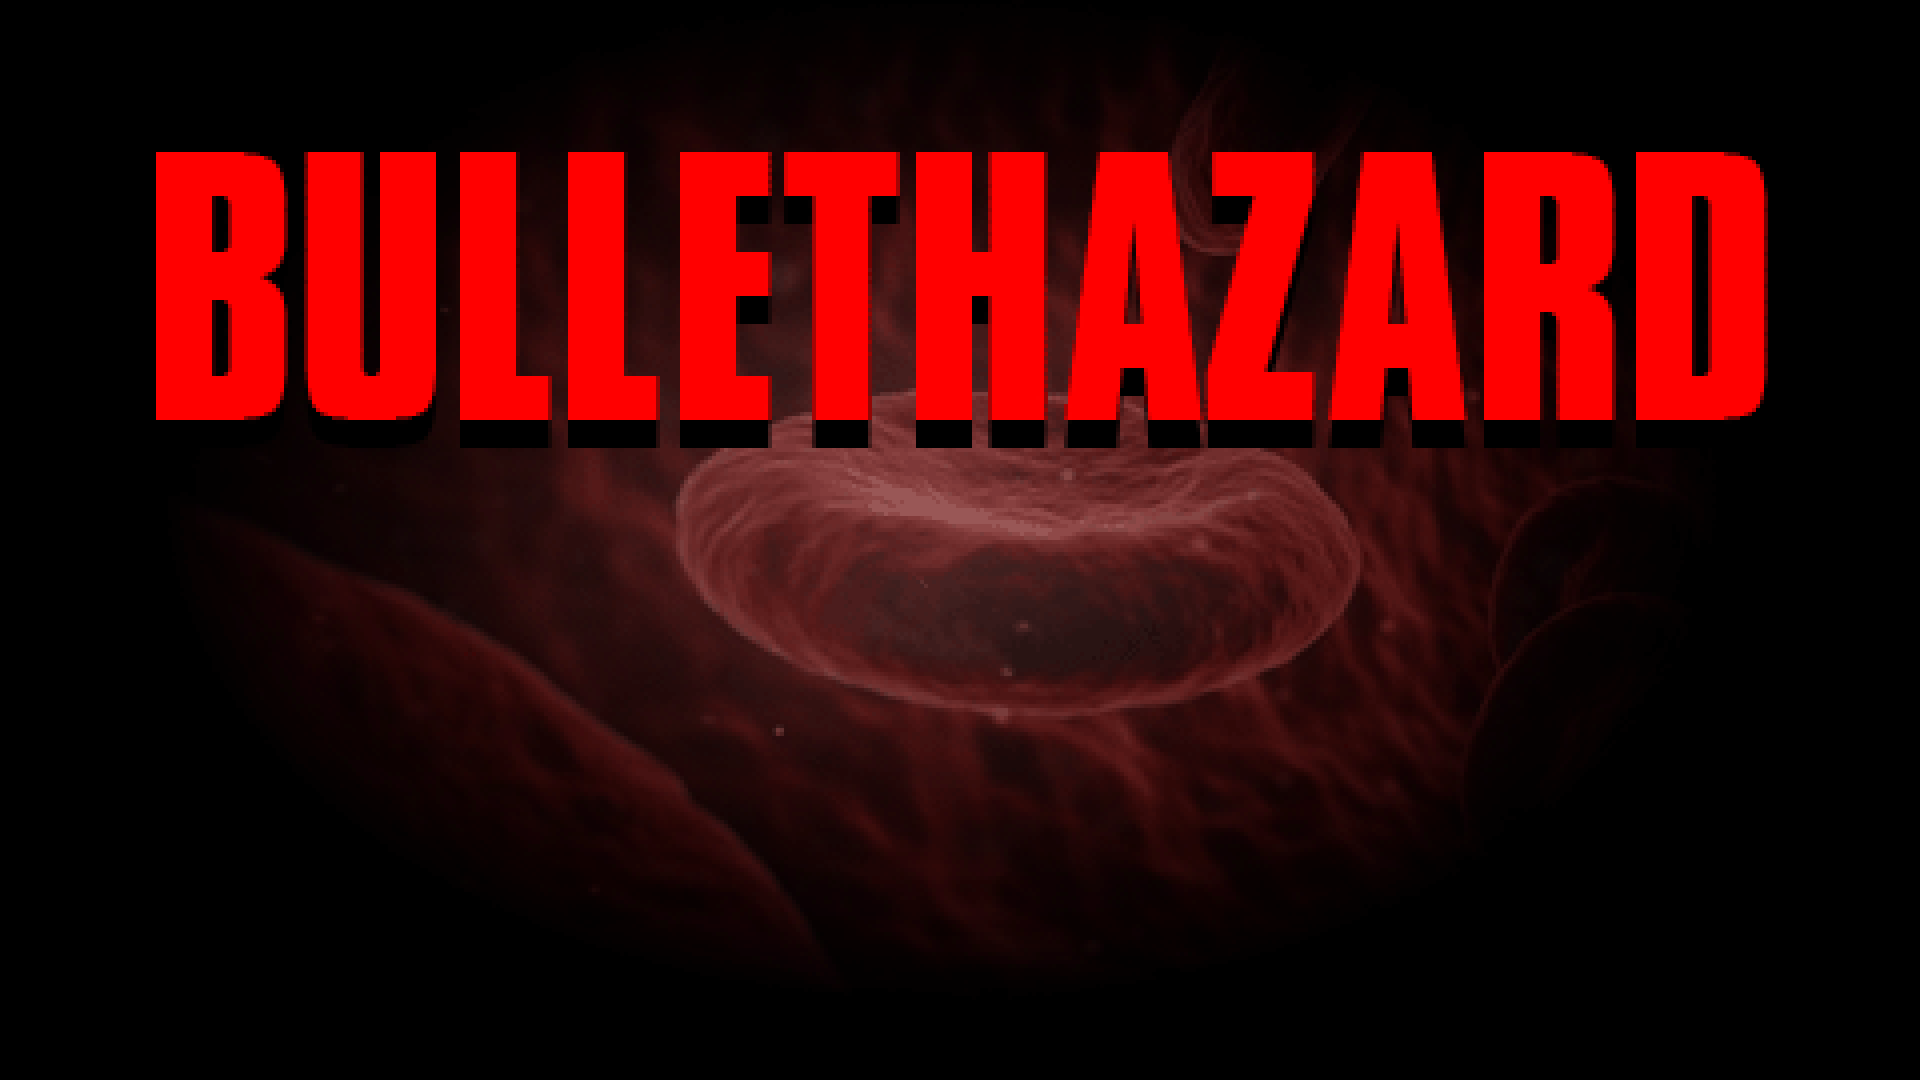 BULLETHAZARD (Bullet Hell Jam 5 entry)